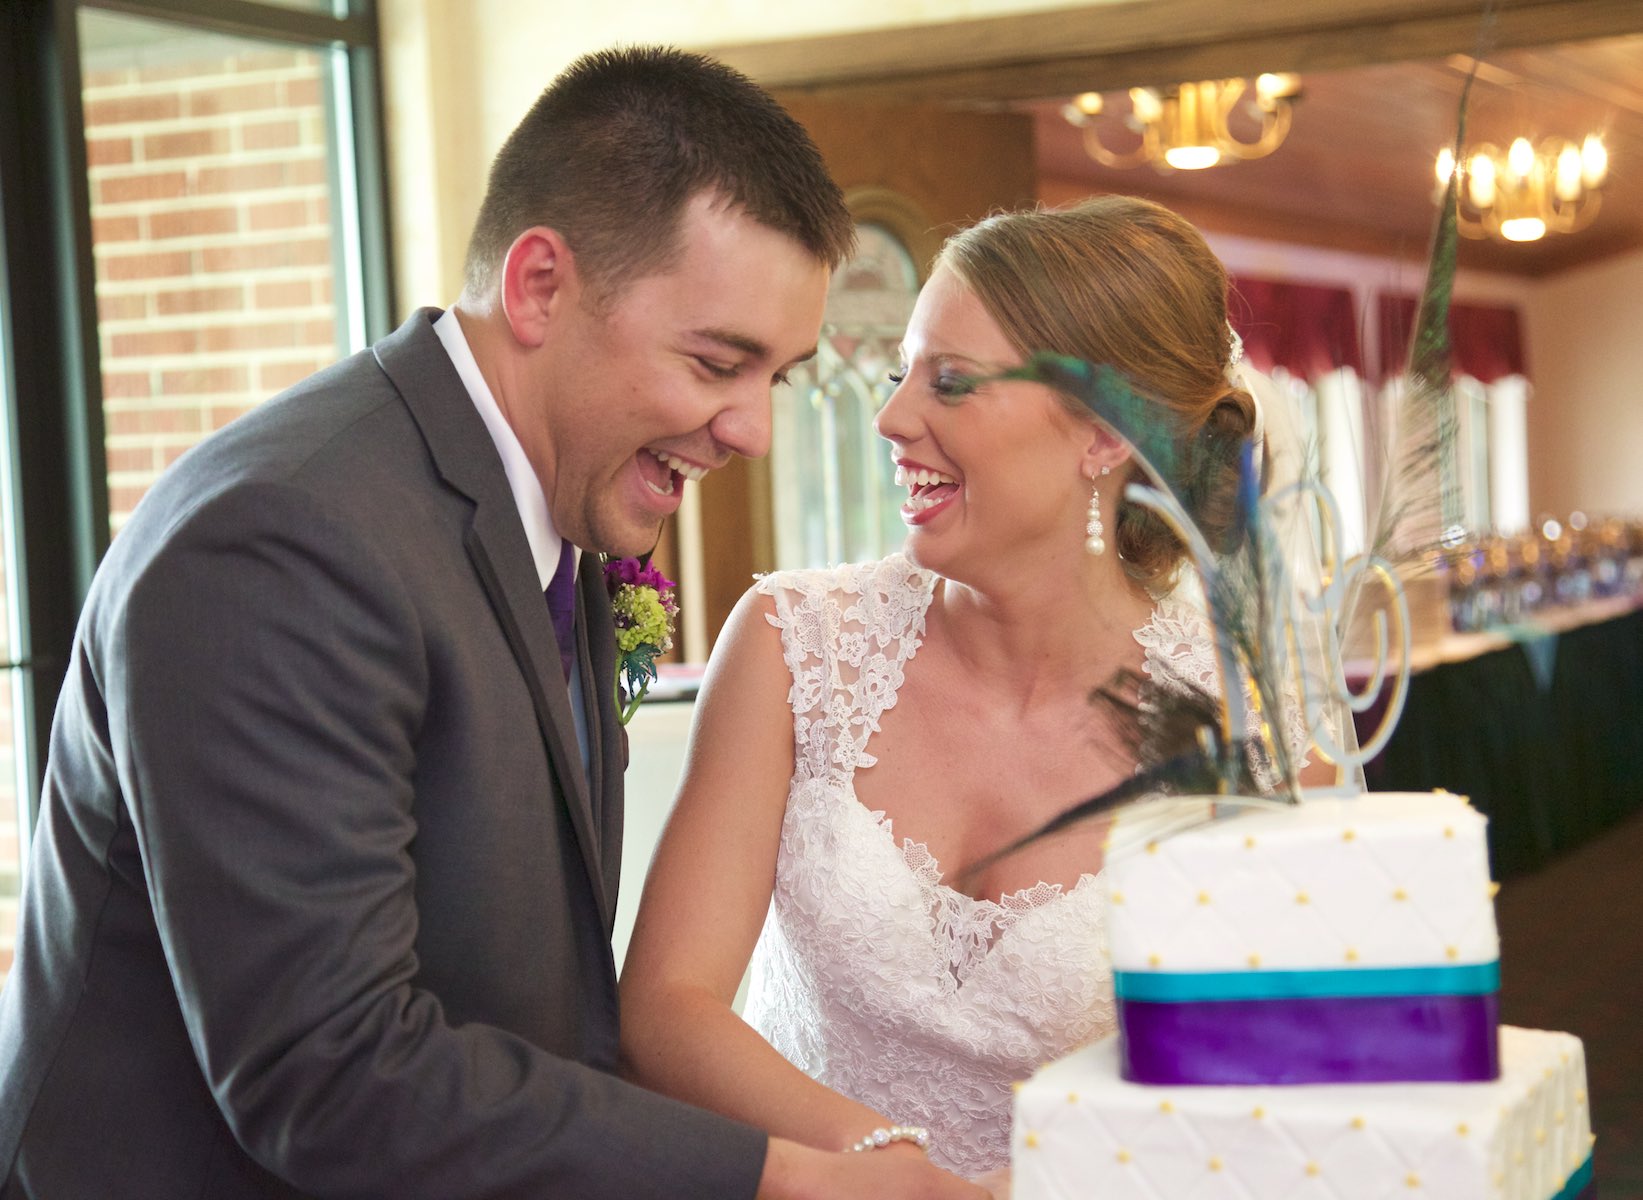 Amanda & Nick cut their wedding cake, Jacksonville Country Club wedding reception. Wedding photography by Steve & Tiffany Warmowski.